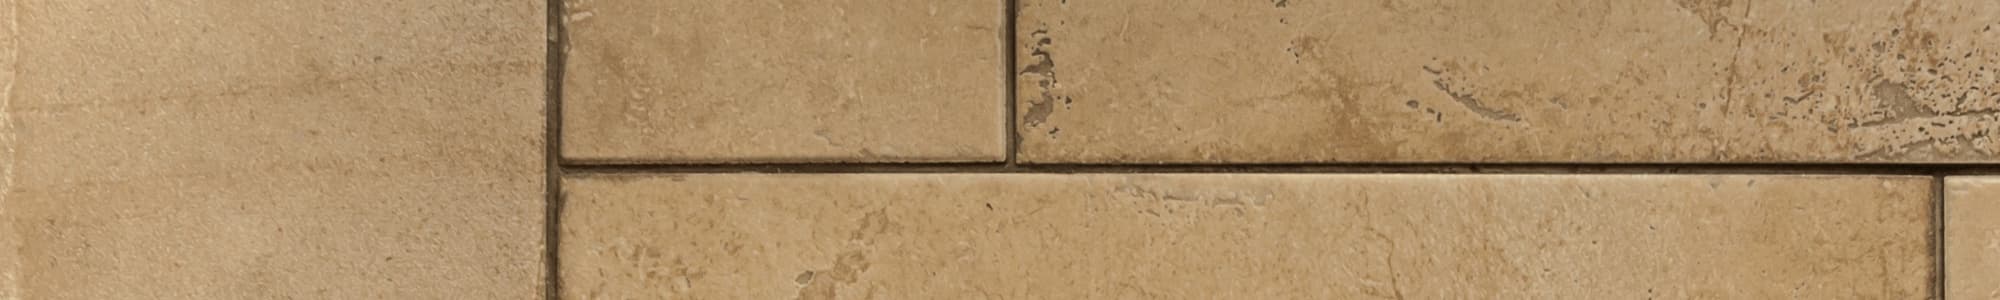 antikolt mészkő padlóburkolat minta